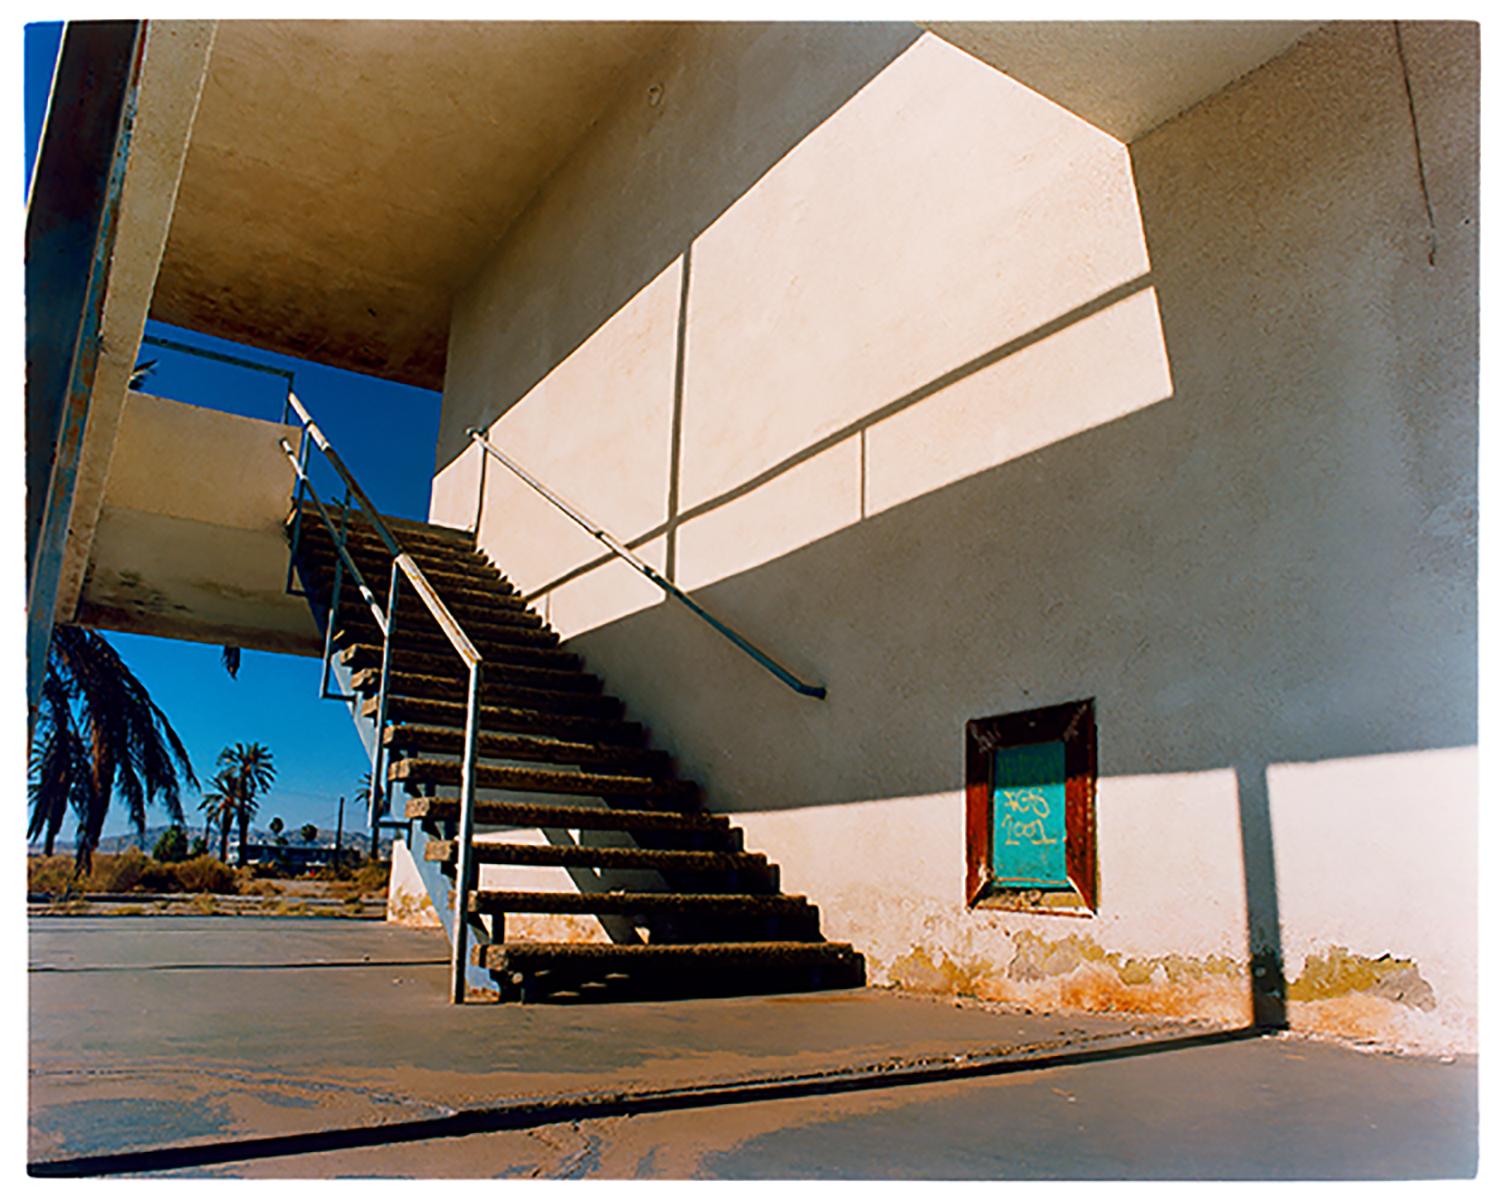 North Shore Motel Steps, Salton Sea, Kalifornien – Architektur-Farbfoto